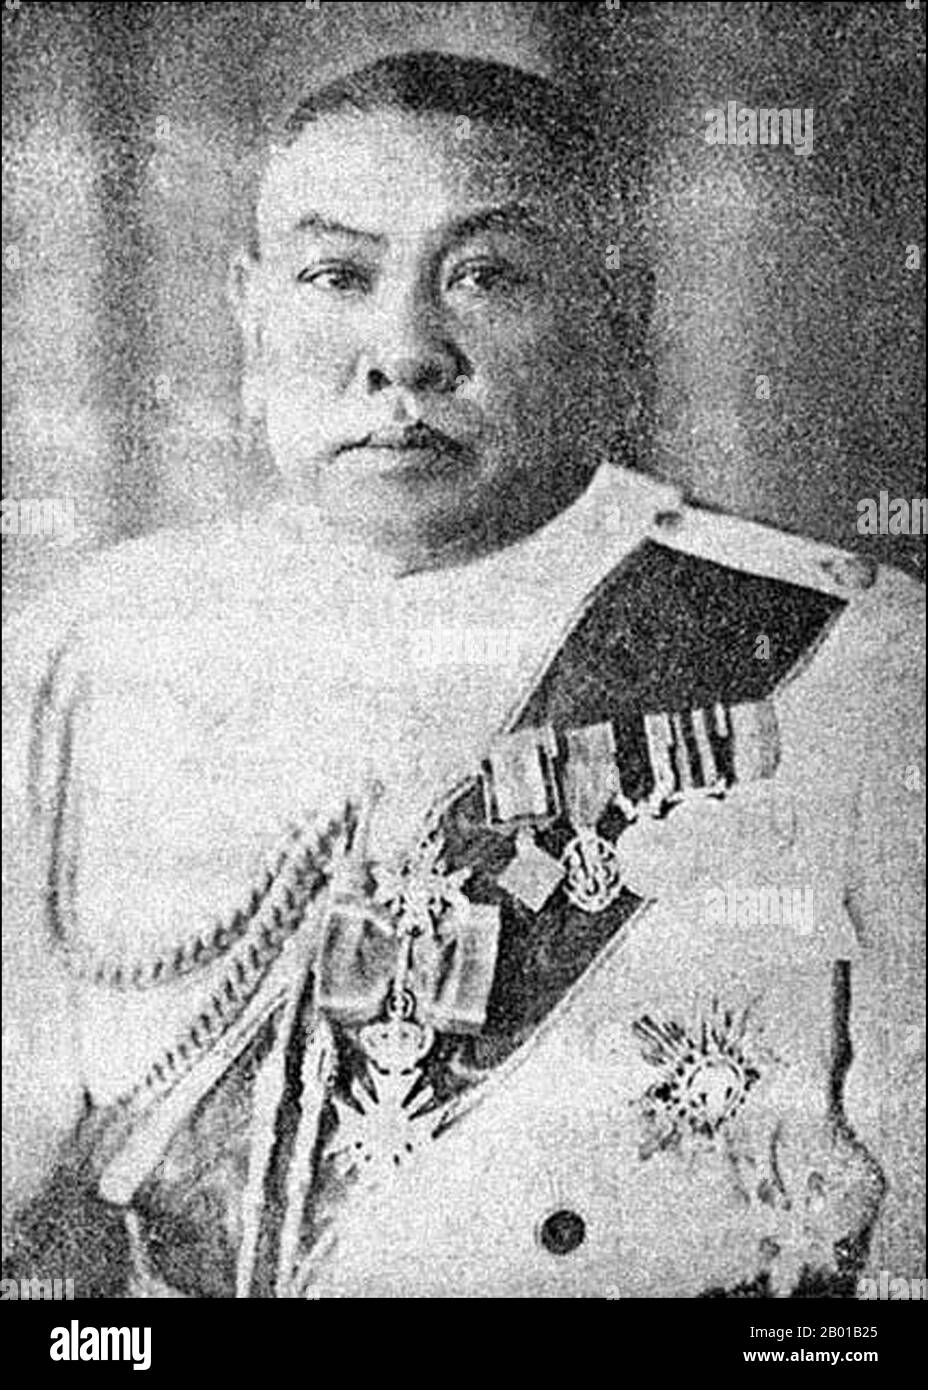 Thaïlande: Général Phot Phahonyothin (29 mars 1887 - 14 février 1947), Premier Ministre de la Thaïlande (r. 1933-1938), chap 1930s. Le général Phraya Phahon Phonphayuhasen, né sous le nom de Phot Phahonyothin, était un chef militaire et politicien thaïlandais. Faisant partie d'un groupe de conspirateurs connu sous le nom de "quatre mousquetaires", il était un leader dans le Khana Ratsadon ("Parti populaire") qui a incité la révolution de 1932 pour mettre fin à la monarchie absolue de Siam et établir un état constitutionnel. Il est devenu le deuxième Premier ministre de Siam en 1933 après avoir renversé son prédécesseur par un coup d'État. Il a pris sa retraite en 1938. Banque D'Images